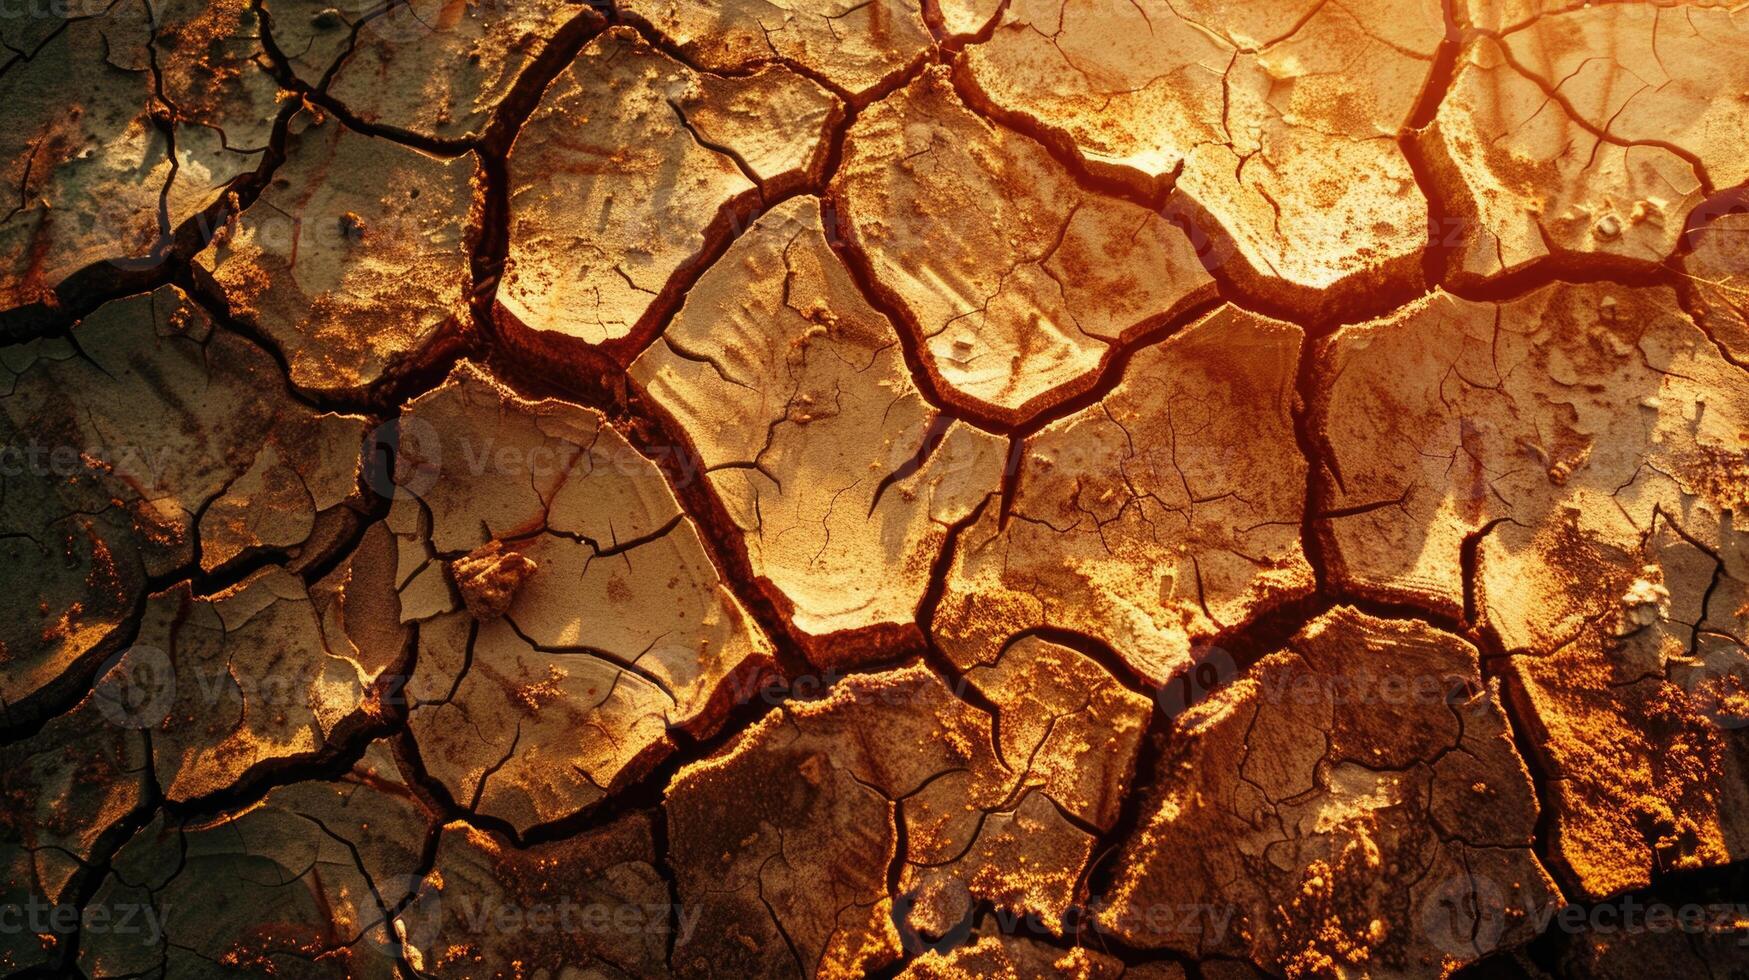 global calentamiento concepto. muerto árbol debajo caliente puesta de sol sequía agrietado Desierto paisaje foto